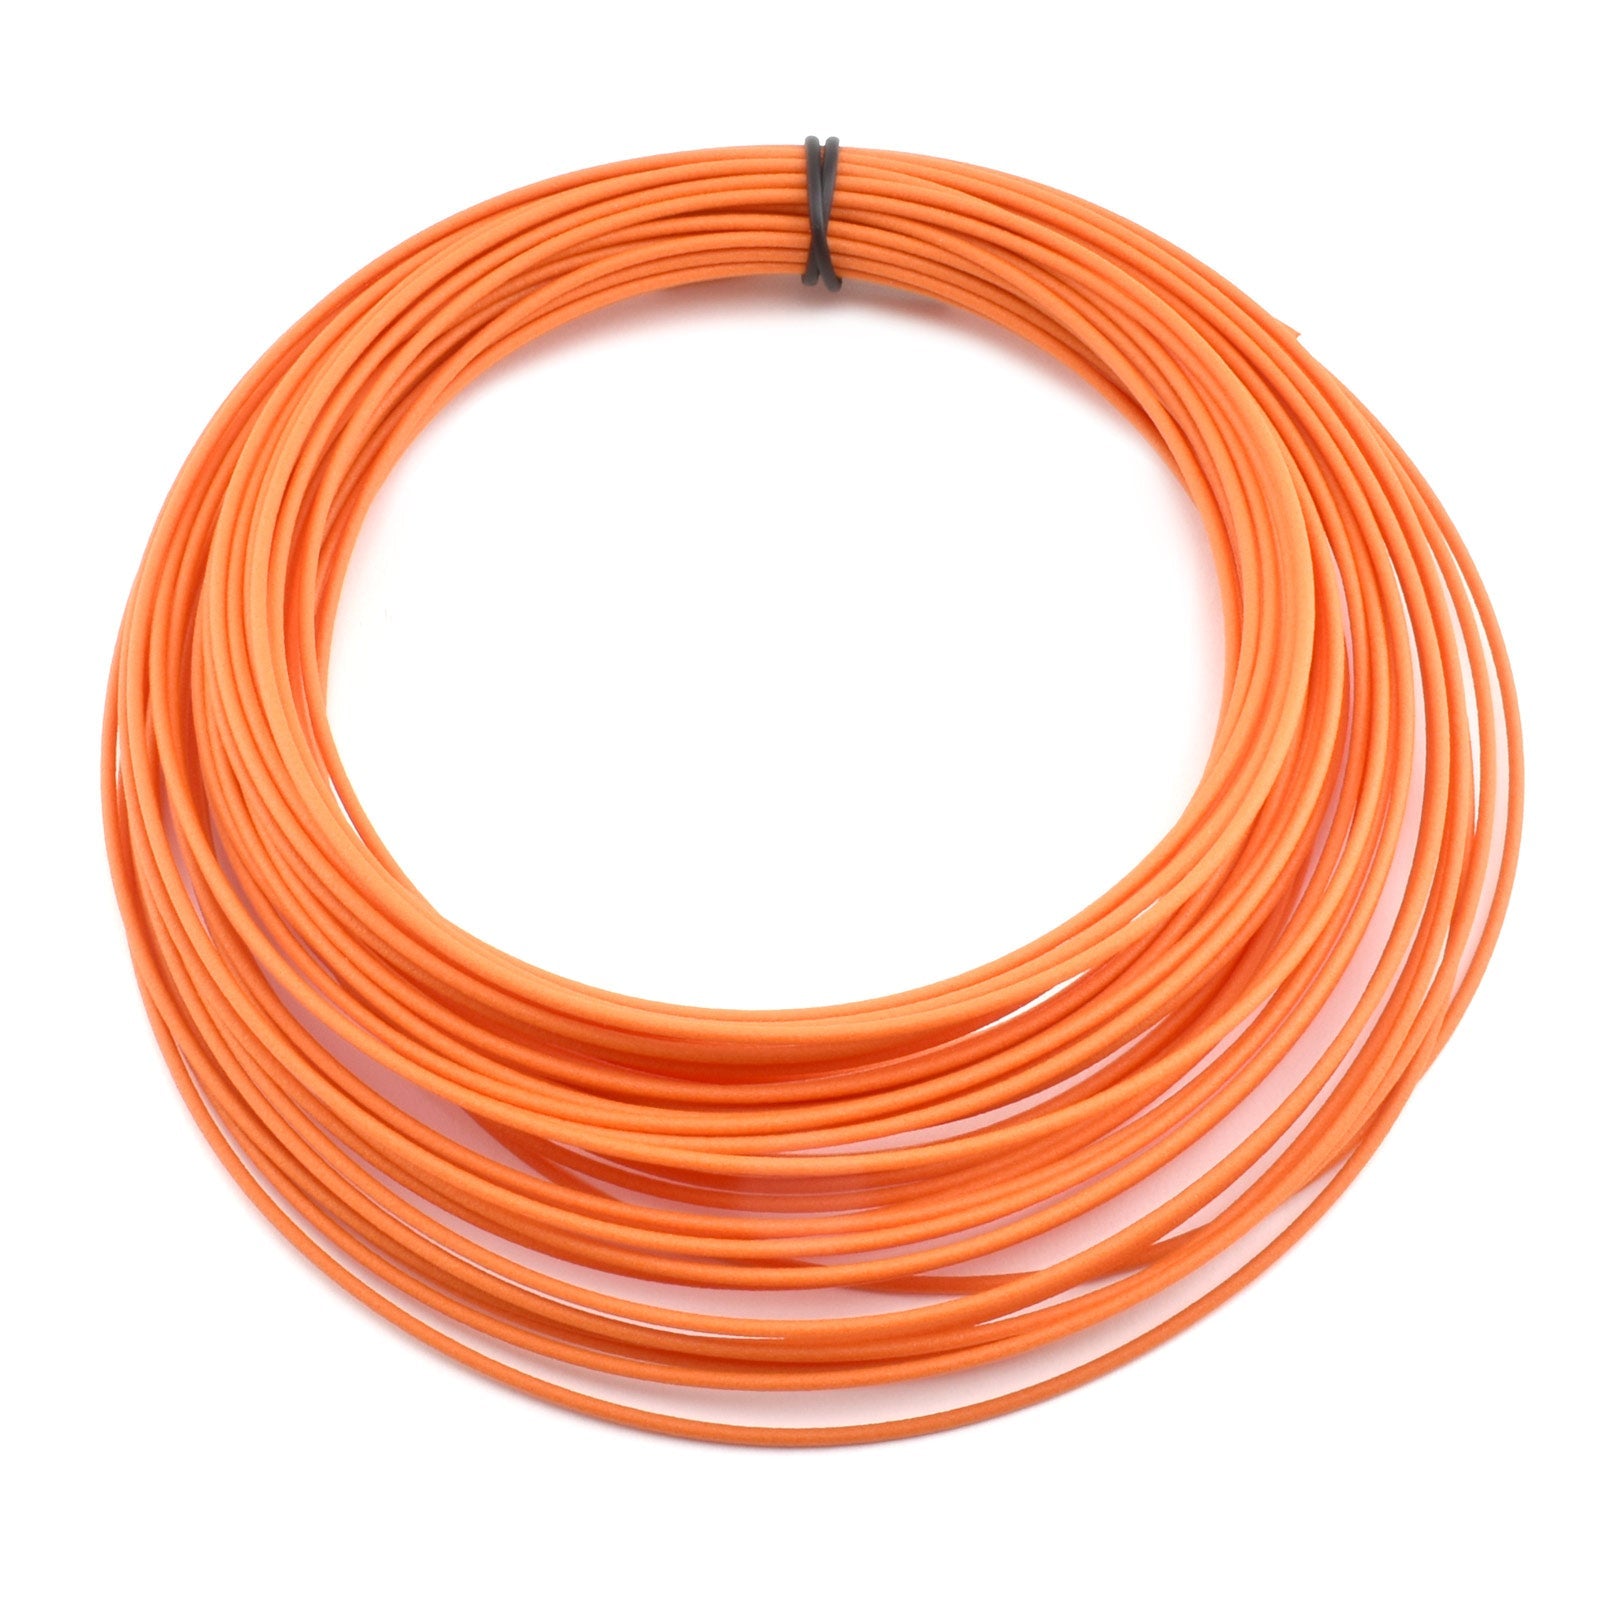 50g Coil Matte Fiber HTPLA - Orange Filament, 1.75mm - Micro - Mark Filament